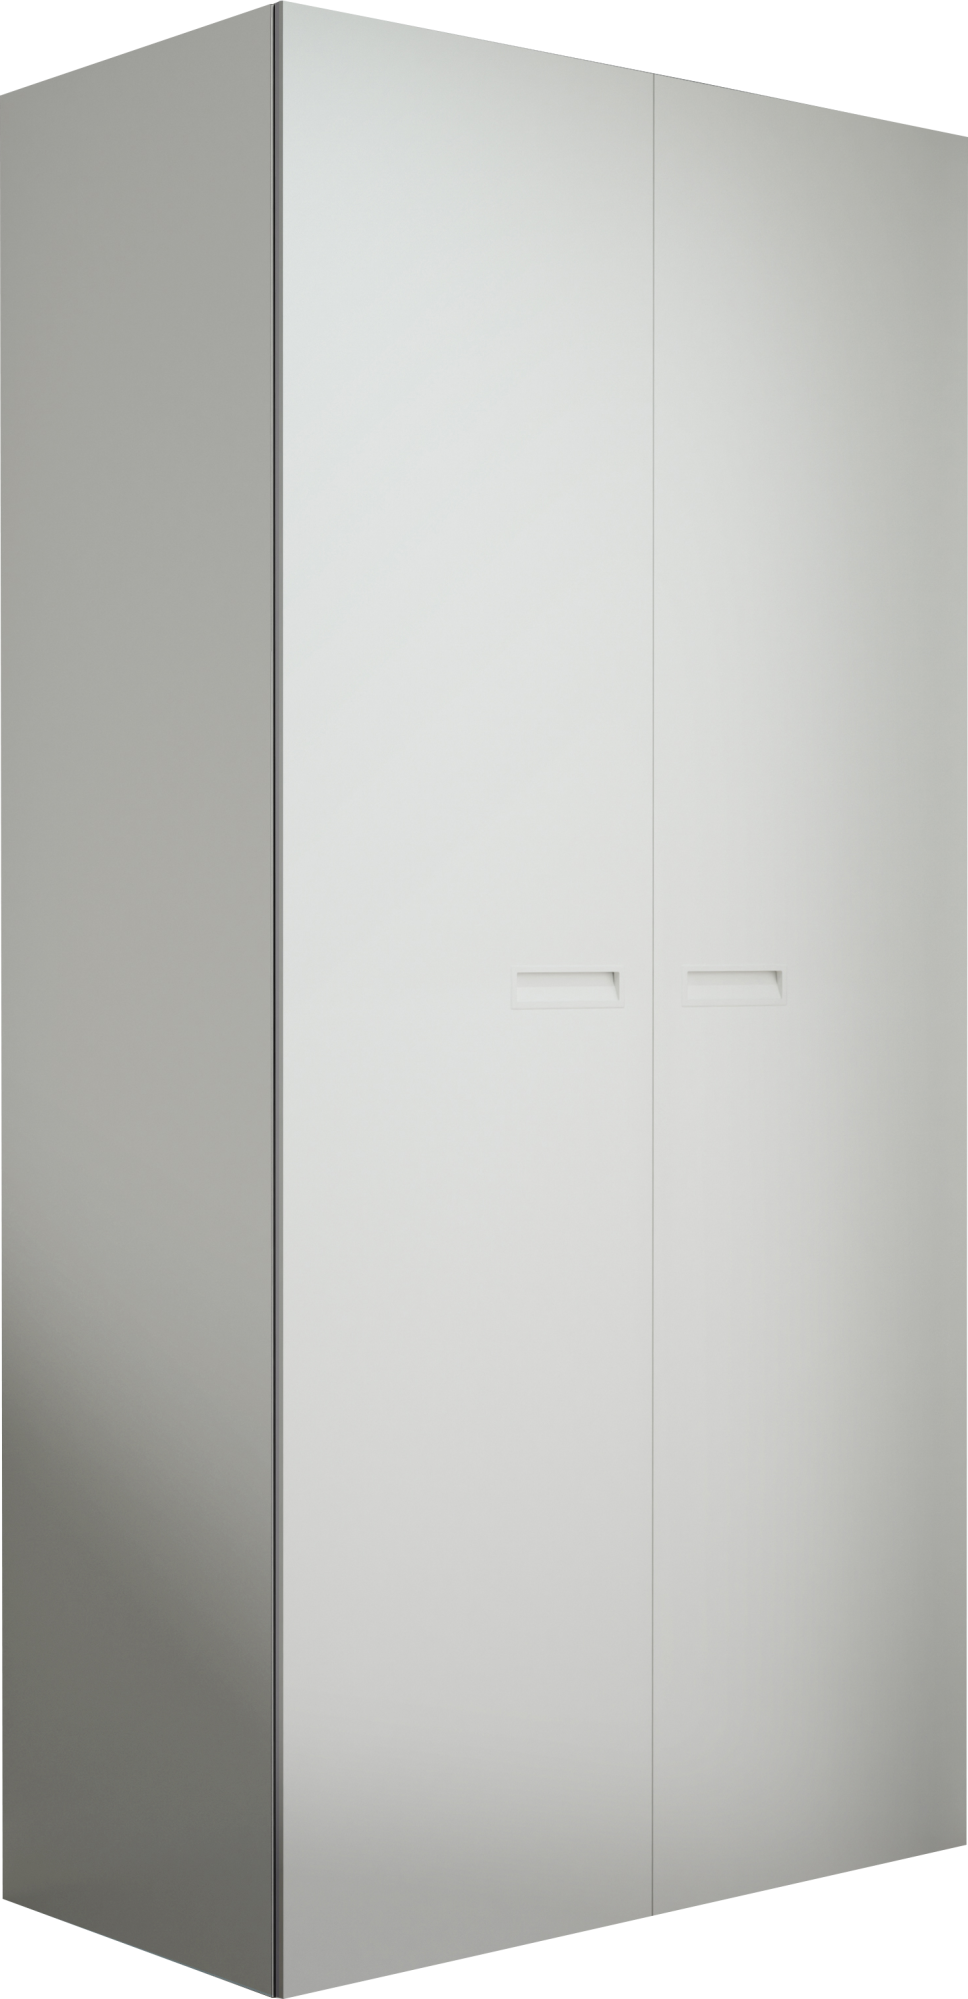 Armario ropero puerta abatible spaceo home tokyo blanco 240x120x60cm